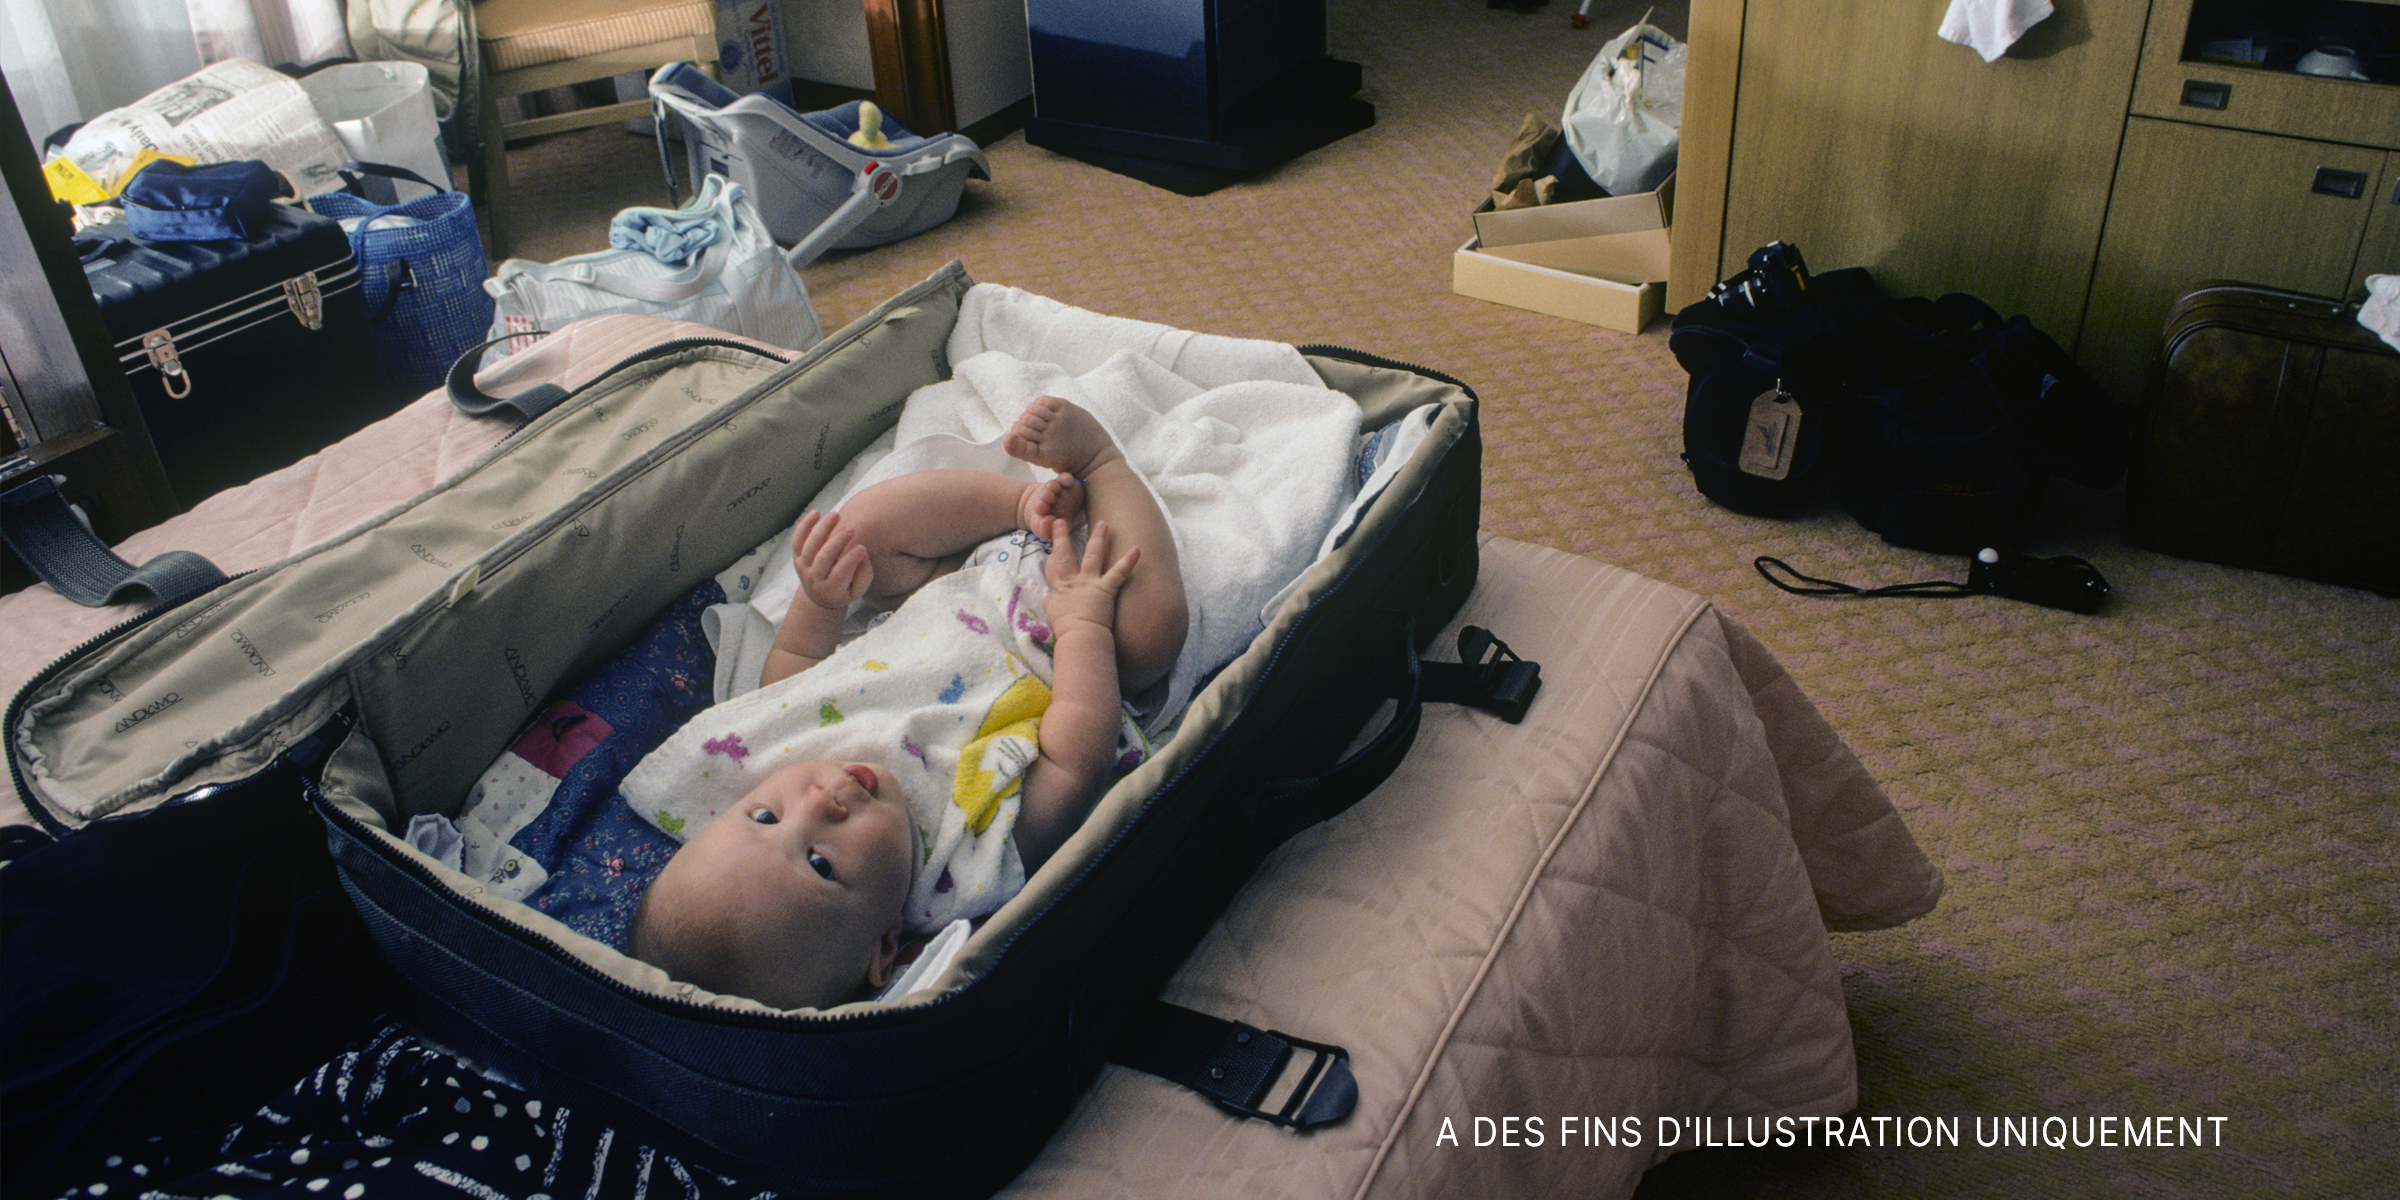 Bébé couché dans une valise | Source : Shutterstock